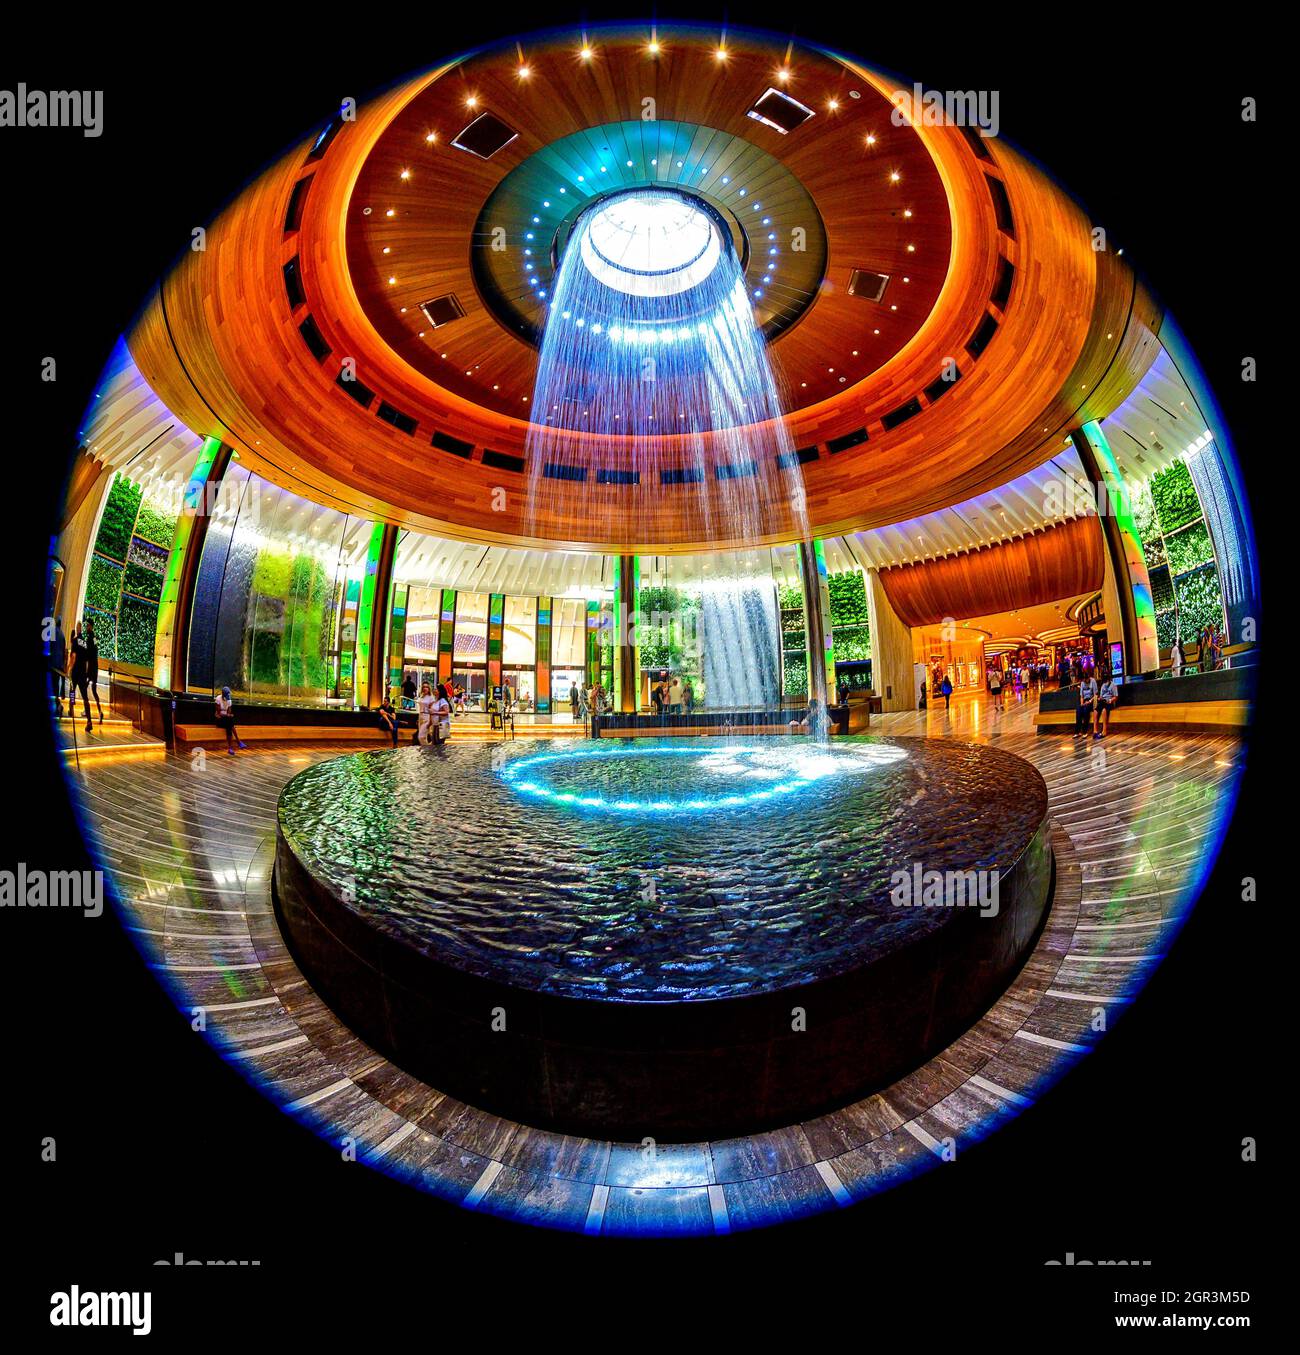 Vista fisheye della fontana circolare ad oculus presso l'hotel e casinò Seminole Hard Rock Foto Stock